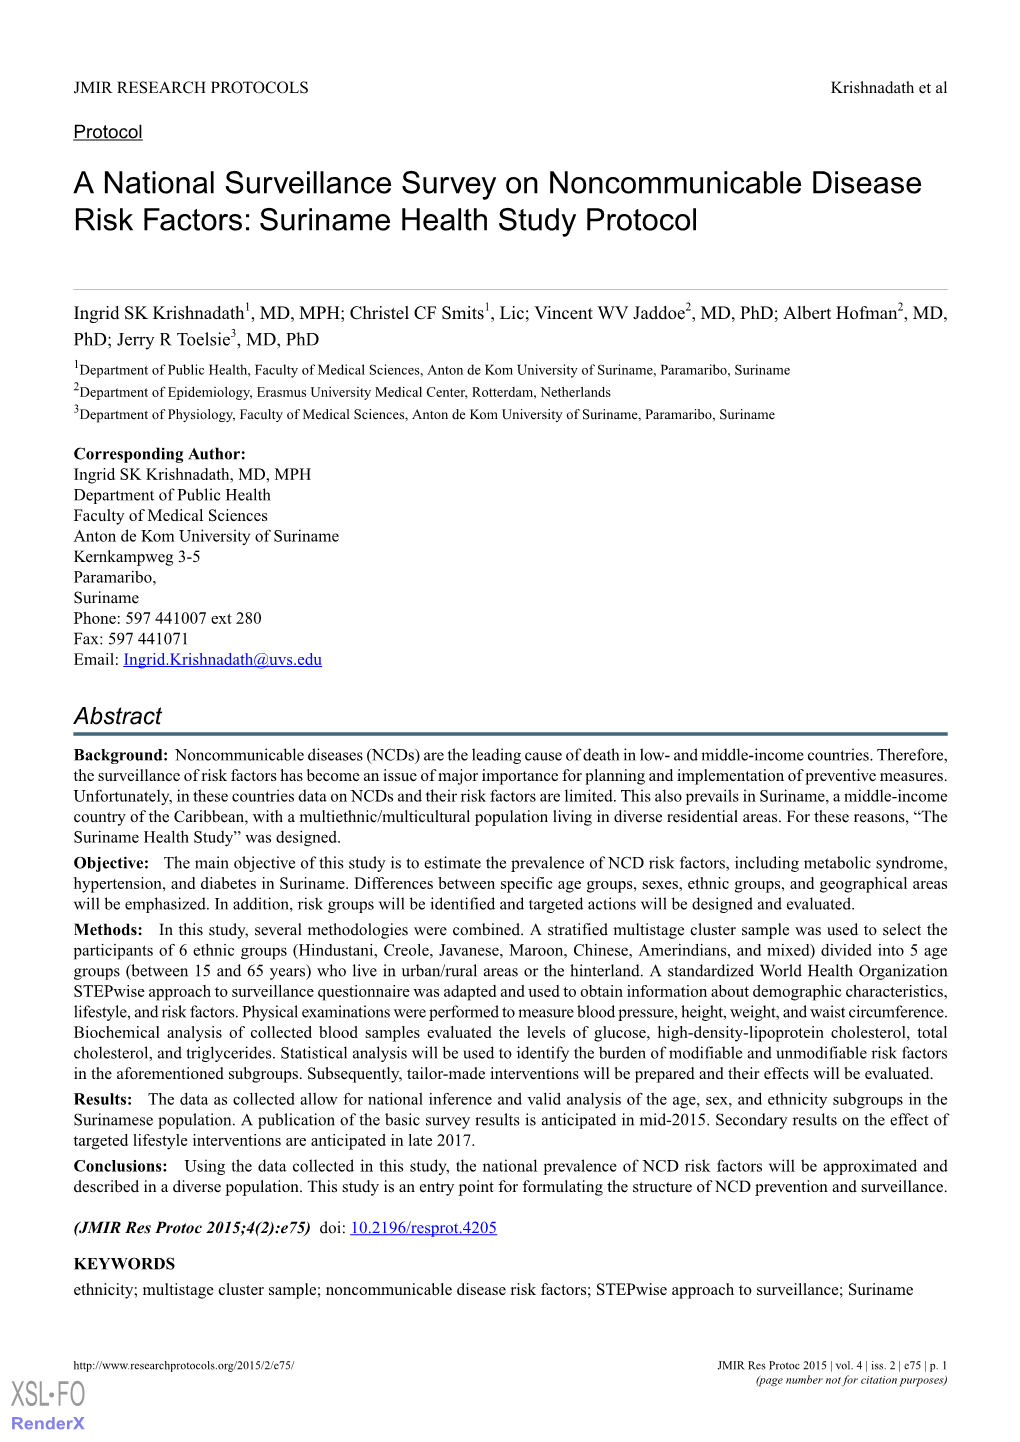 A National Surveillance Survey on Noncommunicable Disease Risk Factors: Suriname Health Study Protocol